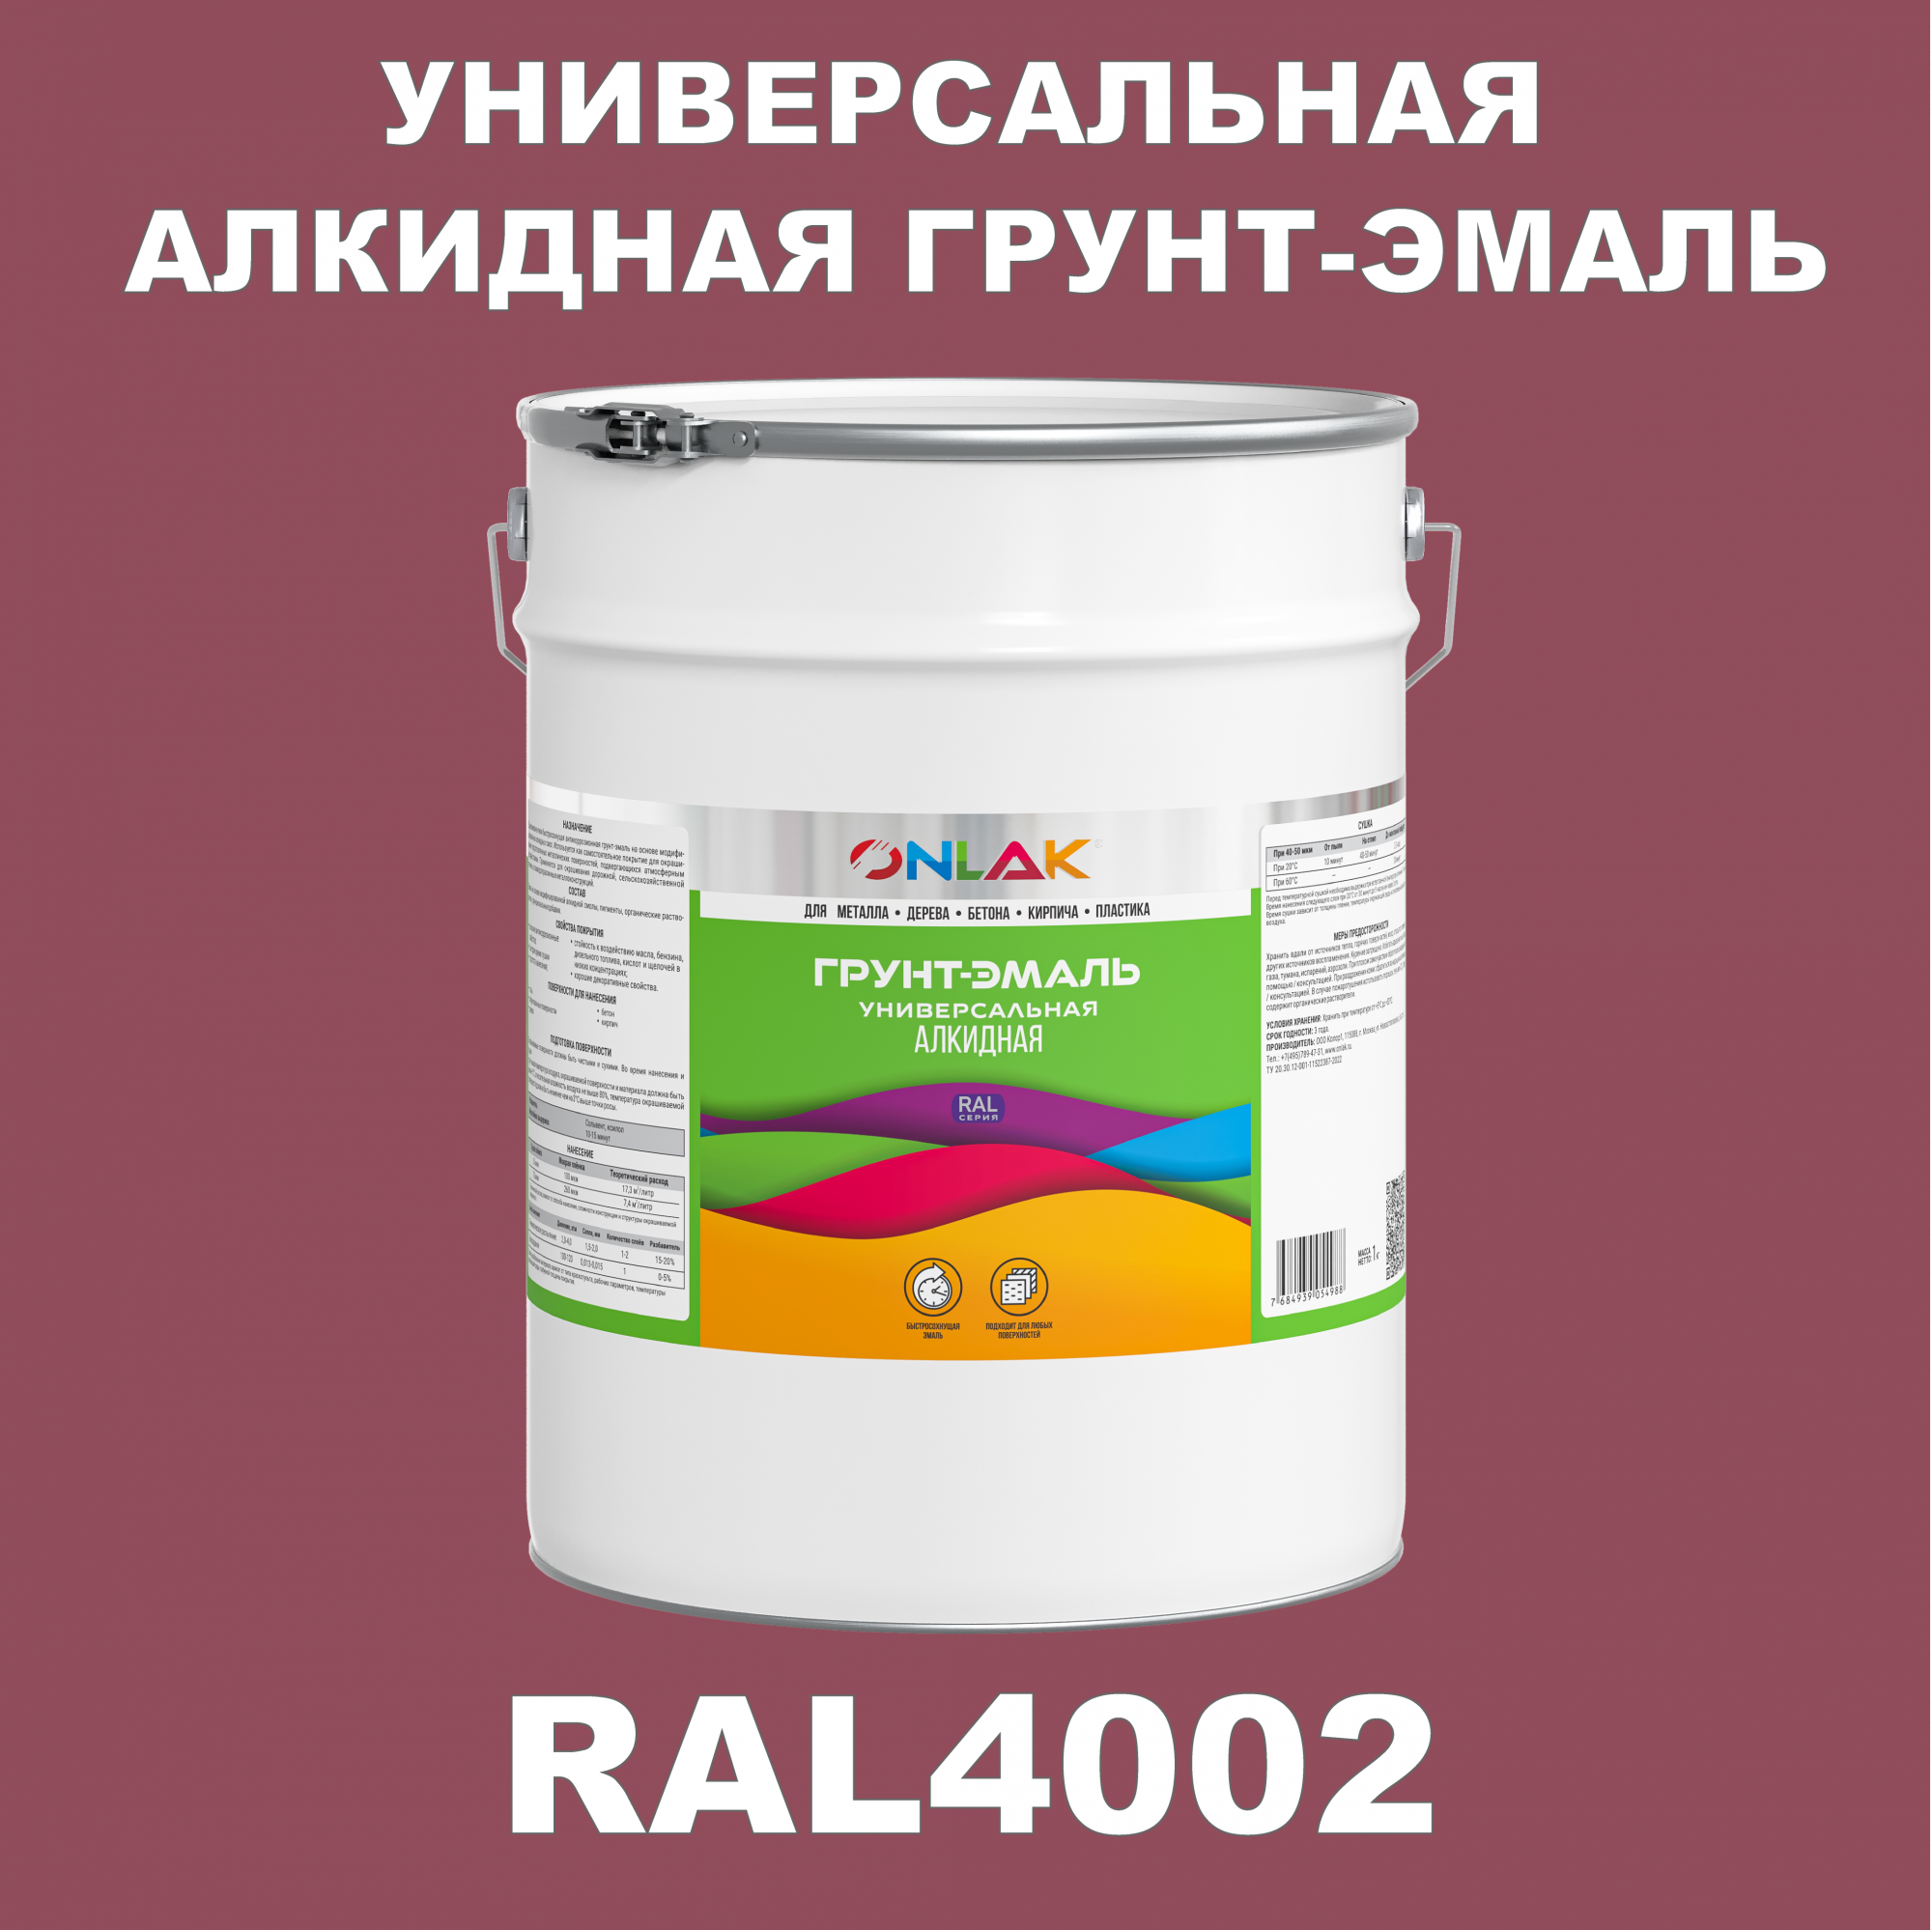 Грунт-эмаль ONLAK 1К RAL4002 антикоррозионная алкидная по металлу по ржавчине 20 кг антикоррозионная грунт эмаль onlak ral 4003 фиолетовый 542 мл